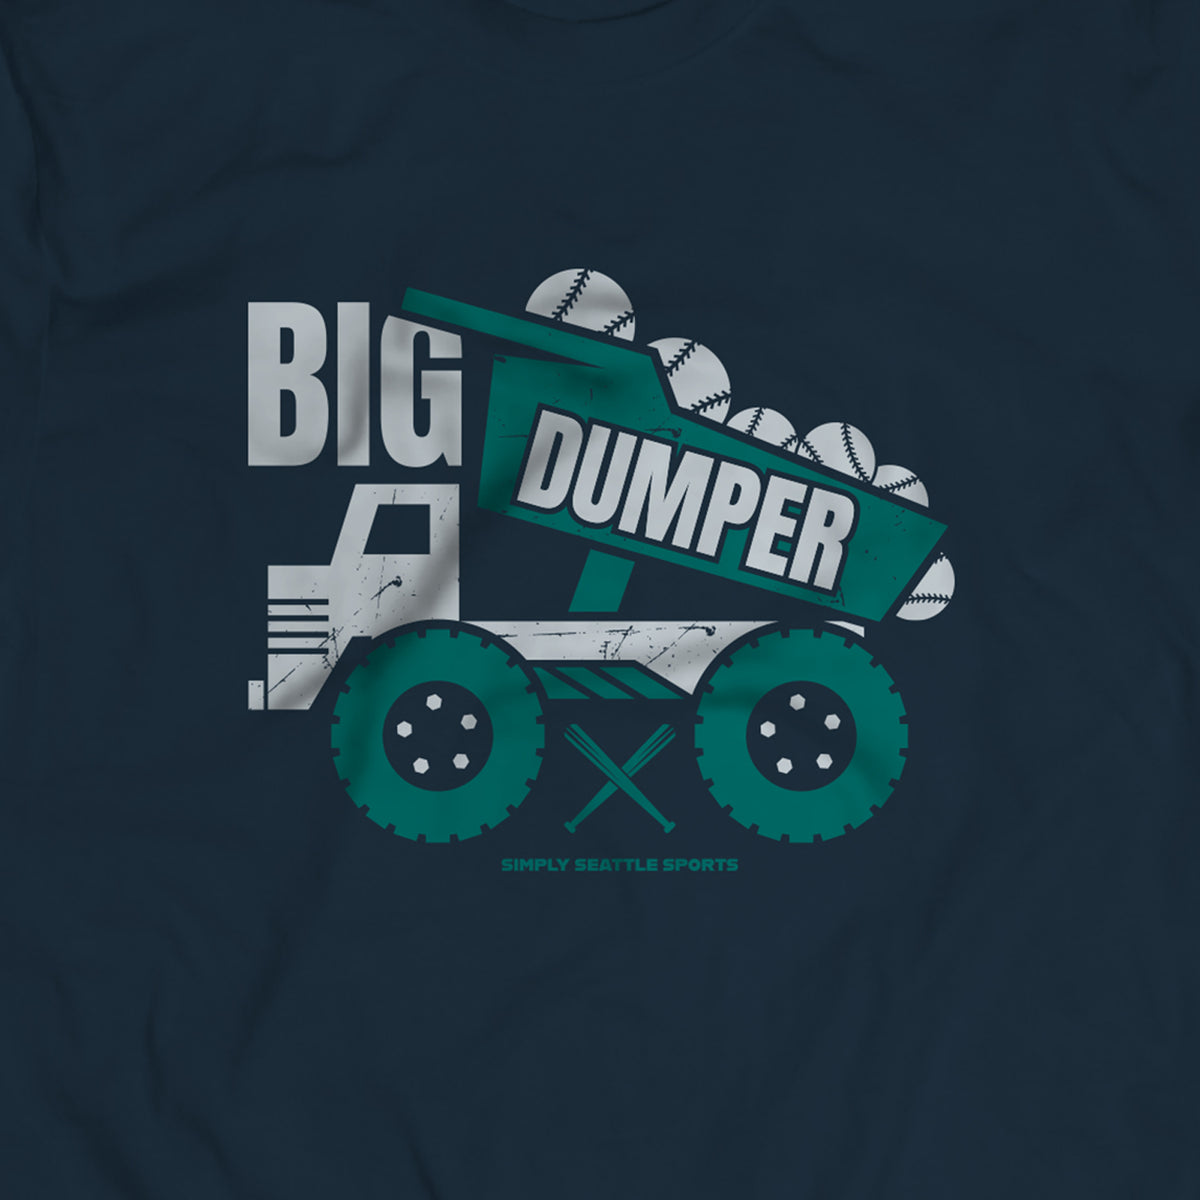 big dumper jersey